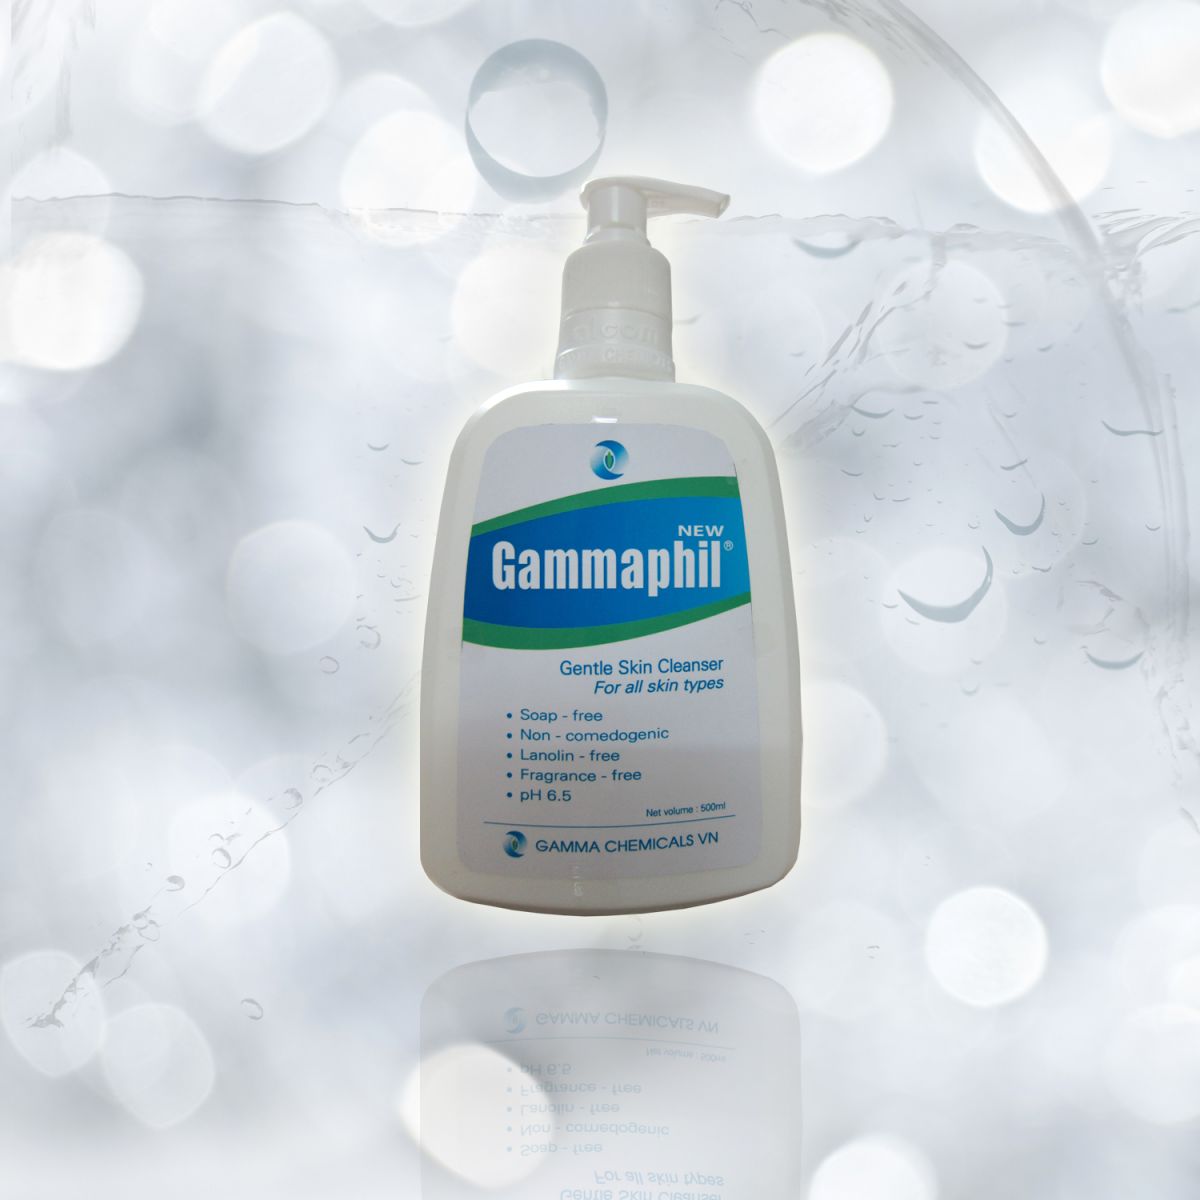 Sữa rửa mặt và toàn thân chuyên dụng Gammaphil (Gentle Skin Cleanser)